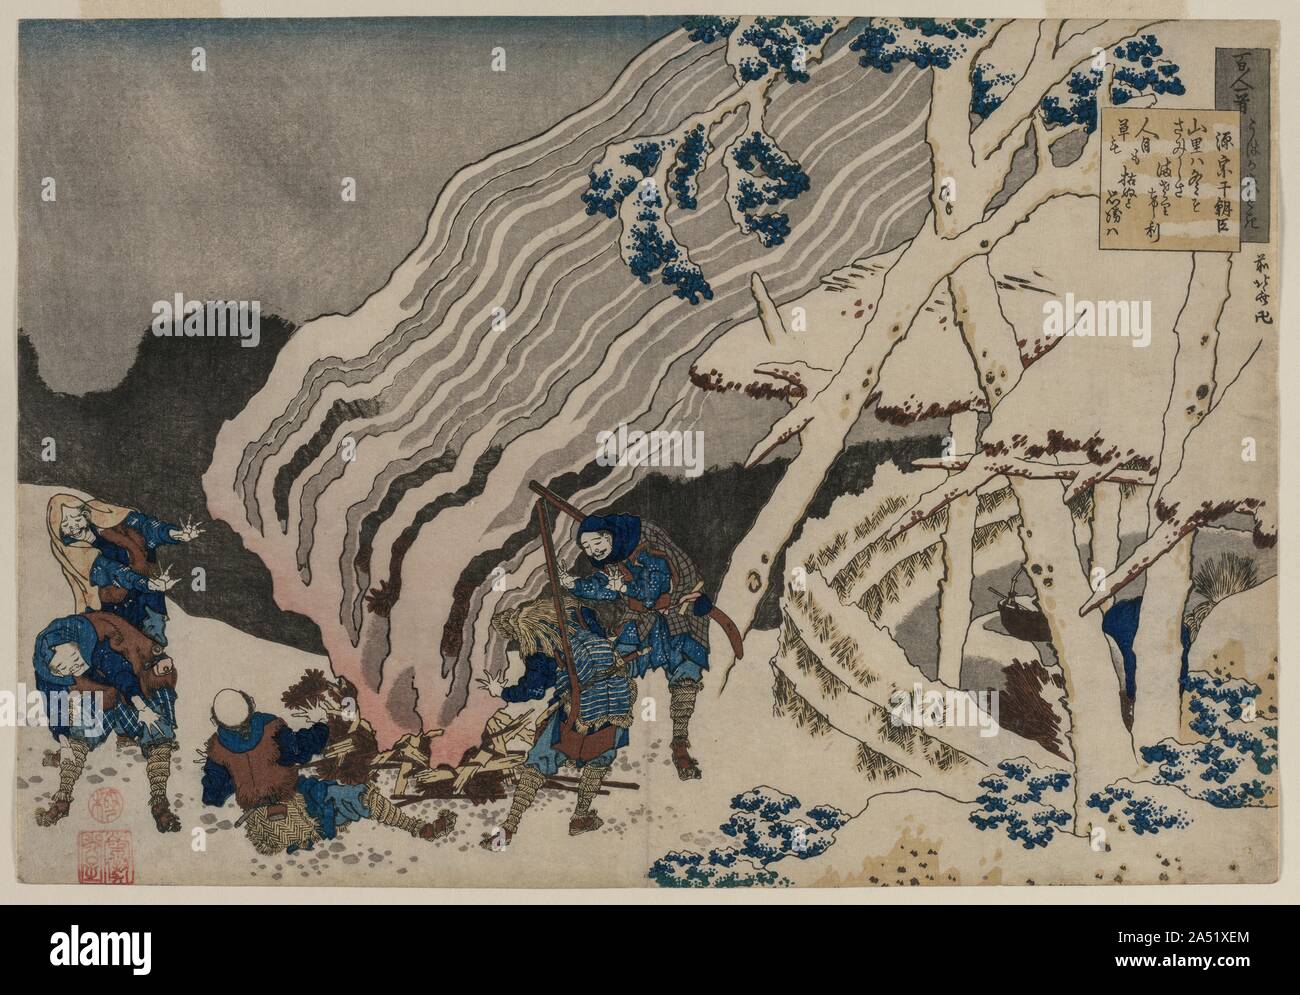 Gedicht von Minamoto no Muneyuki, aus der Serie 100 Gedichte von 100 Dichtern erklärt sich durch die Krankenschwester, 1835-36. Das Drucken von Katsushika Hokusai ist mit einer melancholischen Gedicht von Minamoto no Muneyuki (gestorben 939) in der oberen rechten eingeschrieben. Im Bergdorf, ist es im Winter, meine Einsamkeit erhöht sich die meisten, wenn ich daran denke, wie beide ausgetrocknet sind, die Gräser und Menschen &#x2019;s Besuche. Die Stimmung der Jäger, jedoch im Gegensatz zu dem Gedicht. Erscheinen sie fröhlich Erzählt werden Geschichten von Ihren Jagderfolg während Erwärmung ihre Hände um ein Brüllender Blaze. Ein langer Tag im Winter Stockfoto